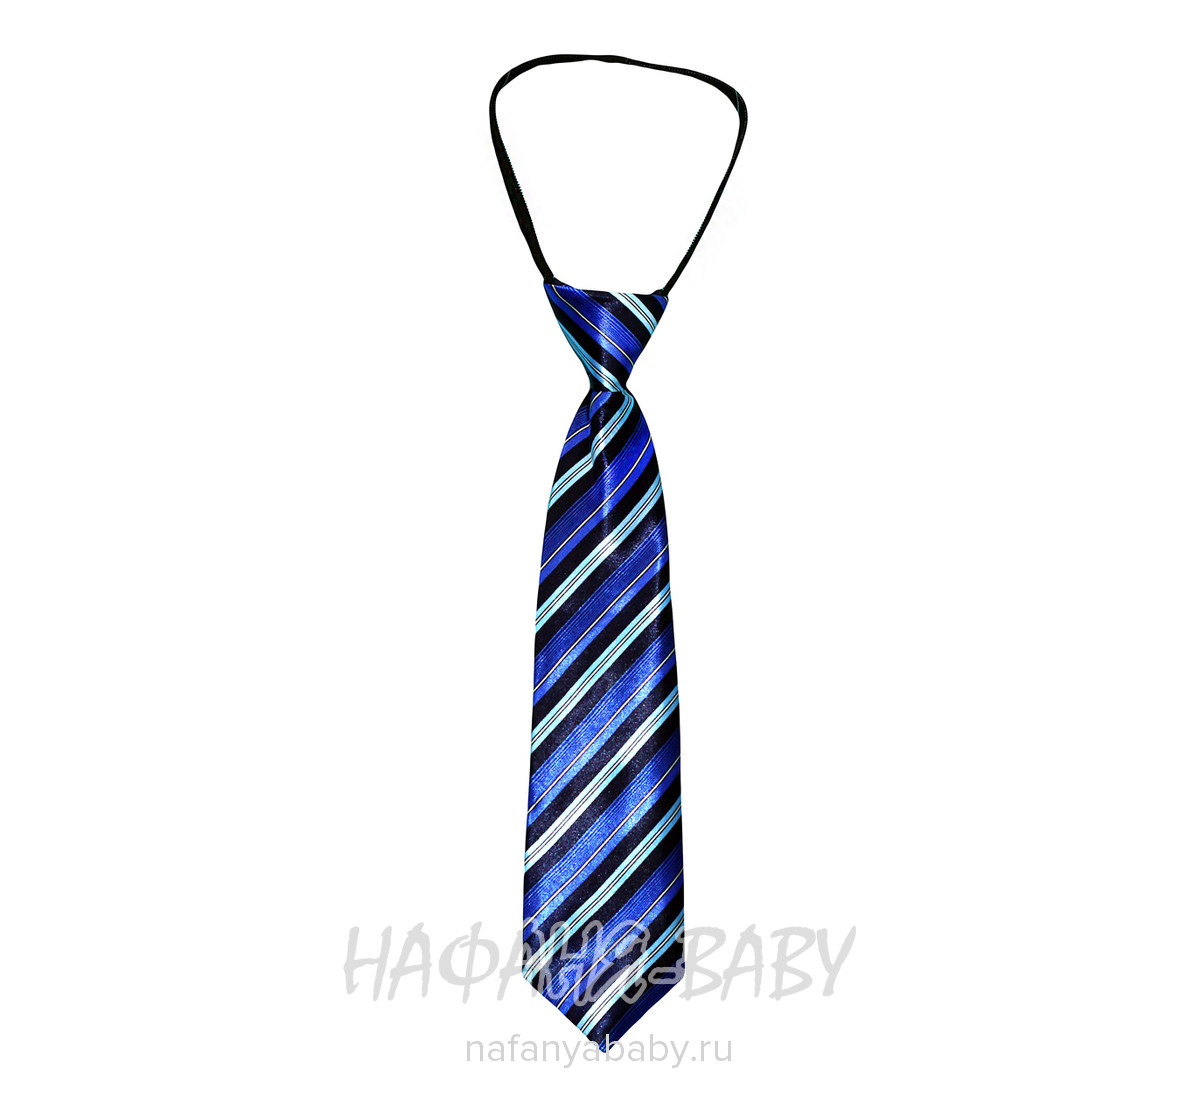 Детский галстук C.R., купить в интернет магазине Нафаня. арт: 4040.